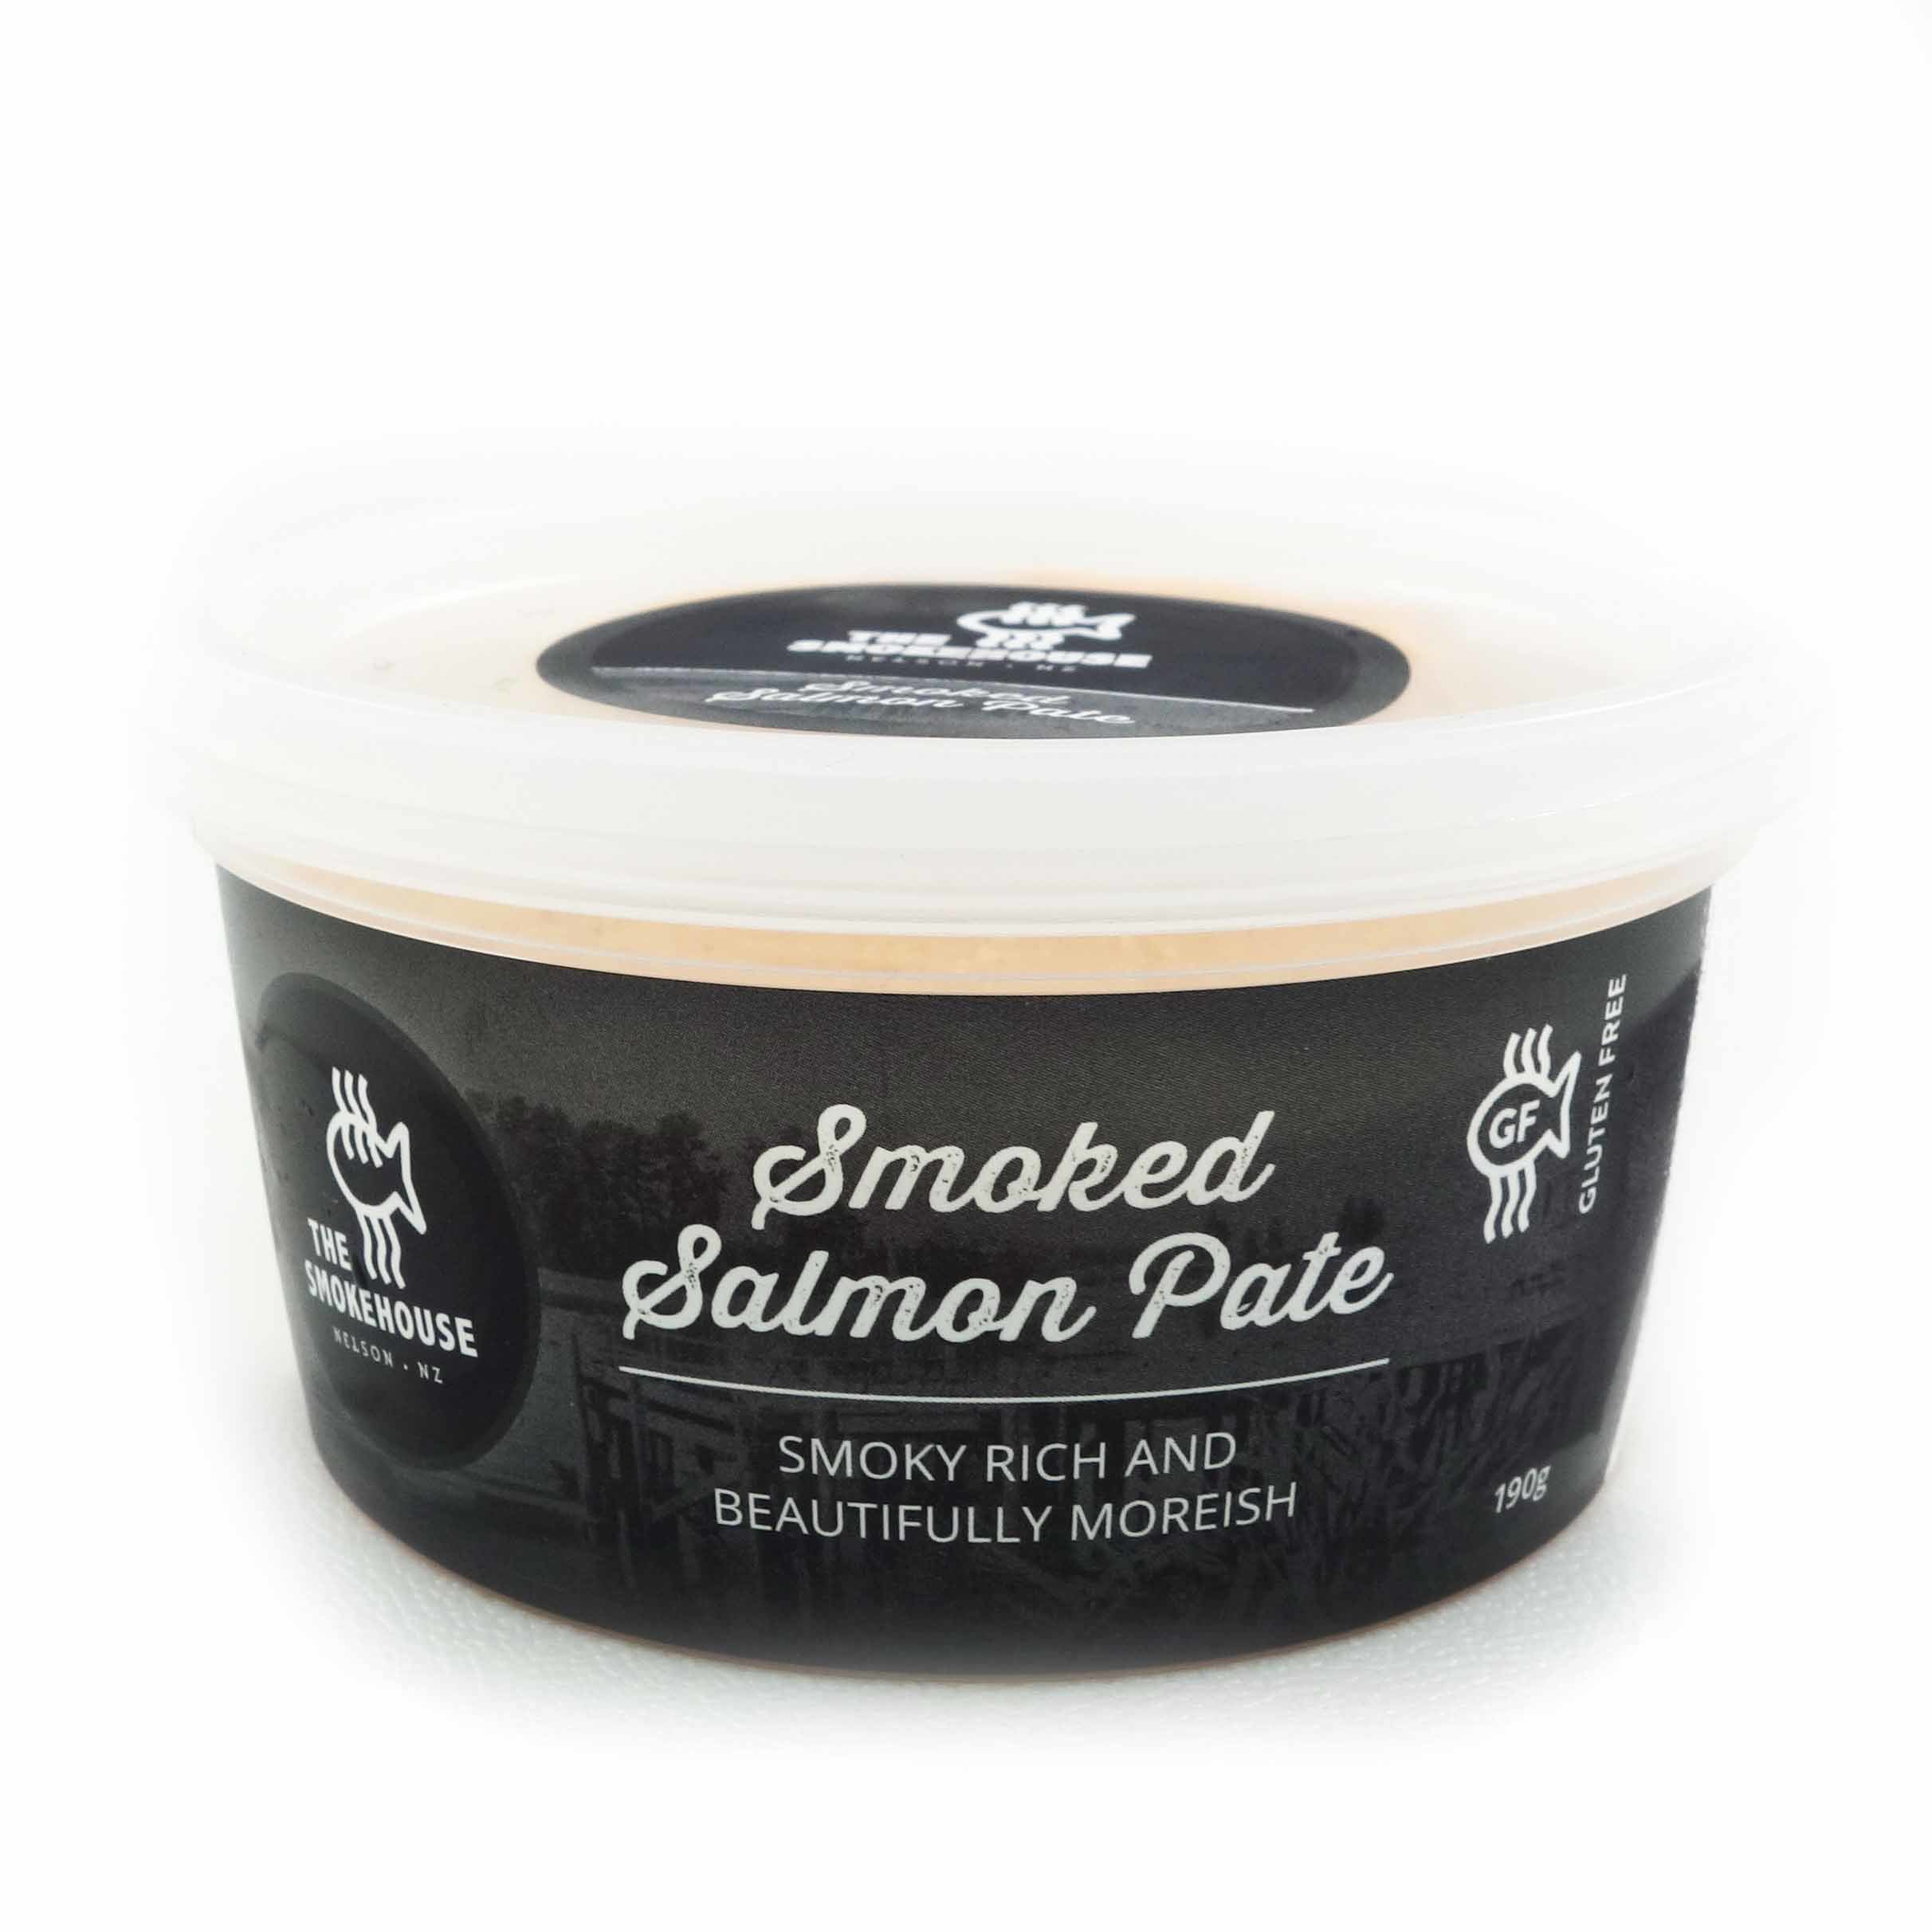 NZ Smokehouse Smoked Salmon Pate 180g*